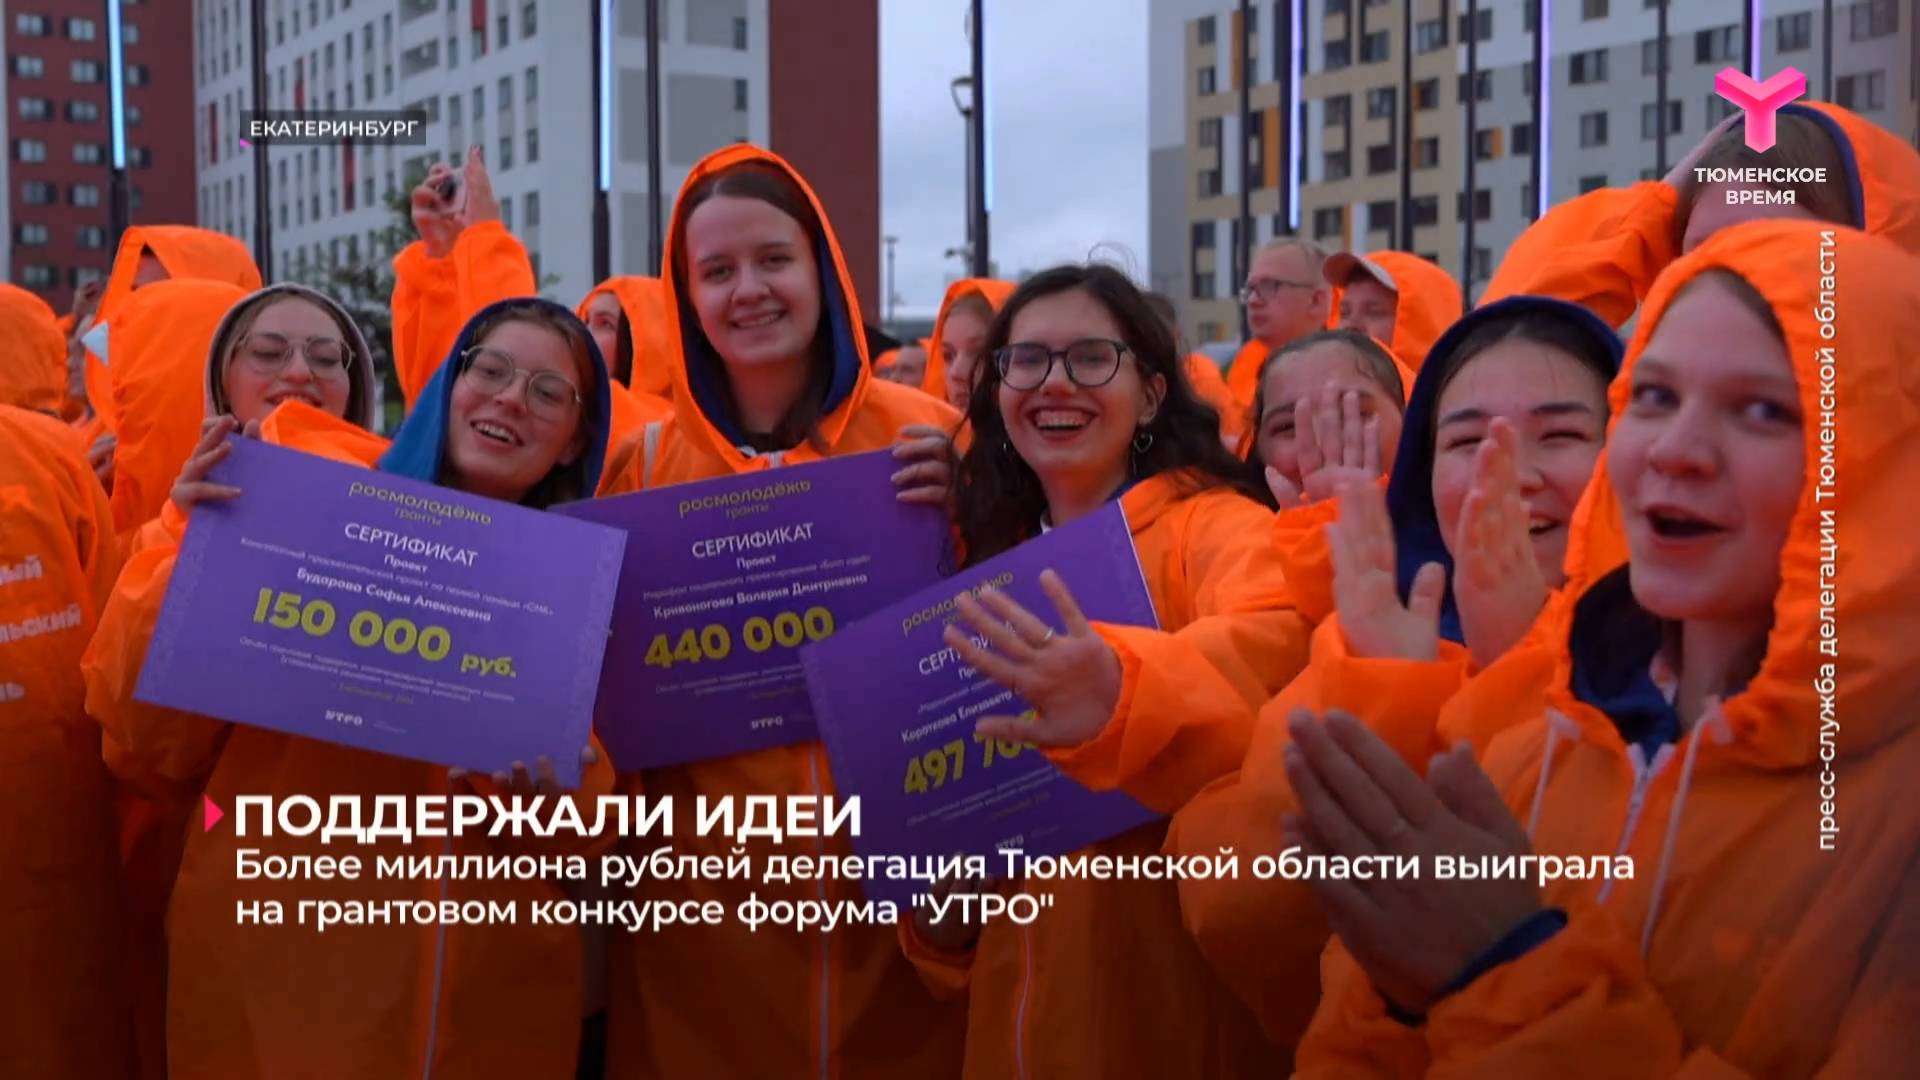 Более миллиона рублей делегация Тюменской области выиграла на грантовом конкурсе форума "УТРО"